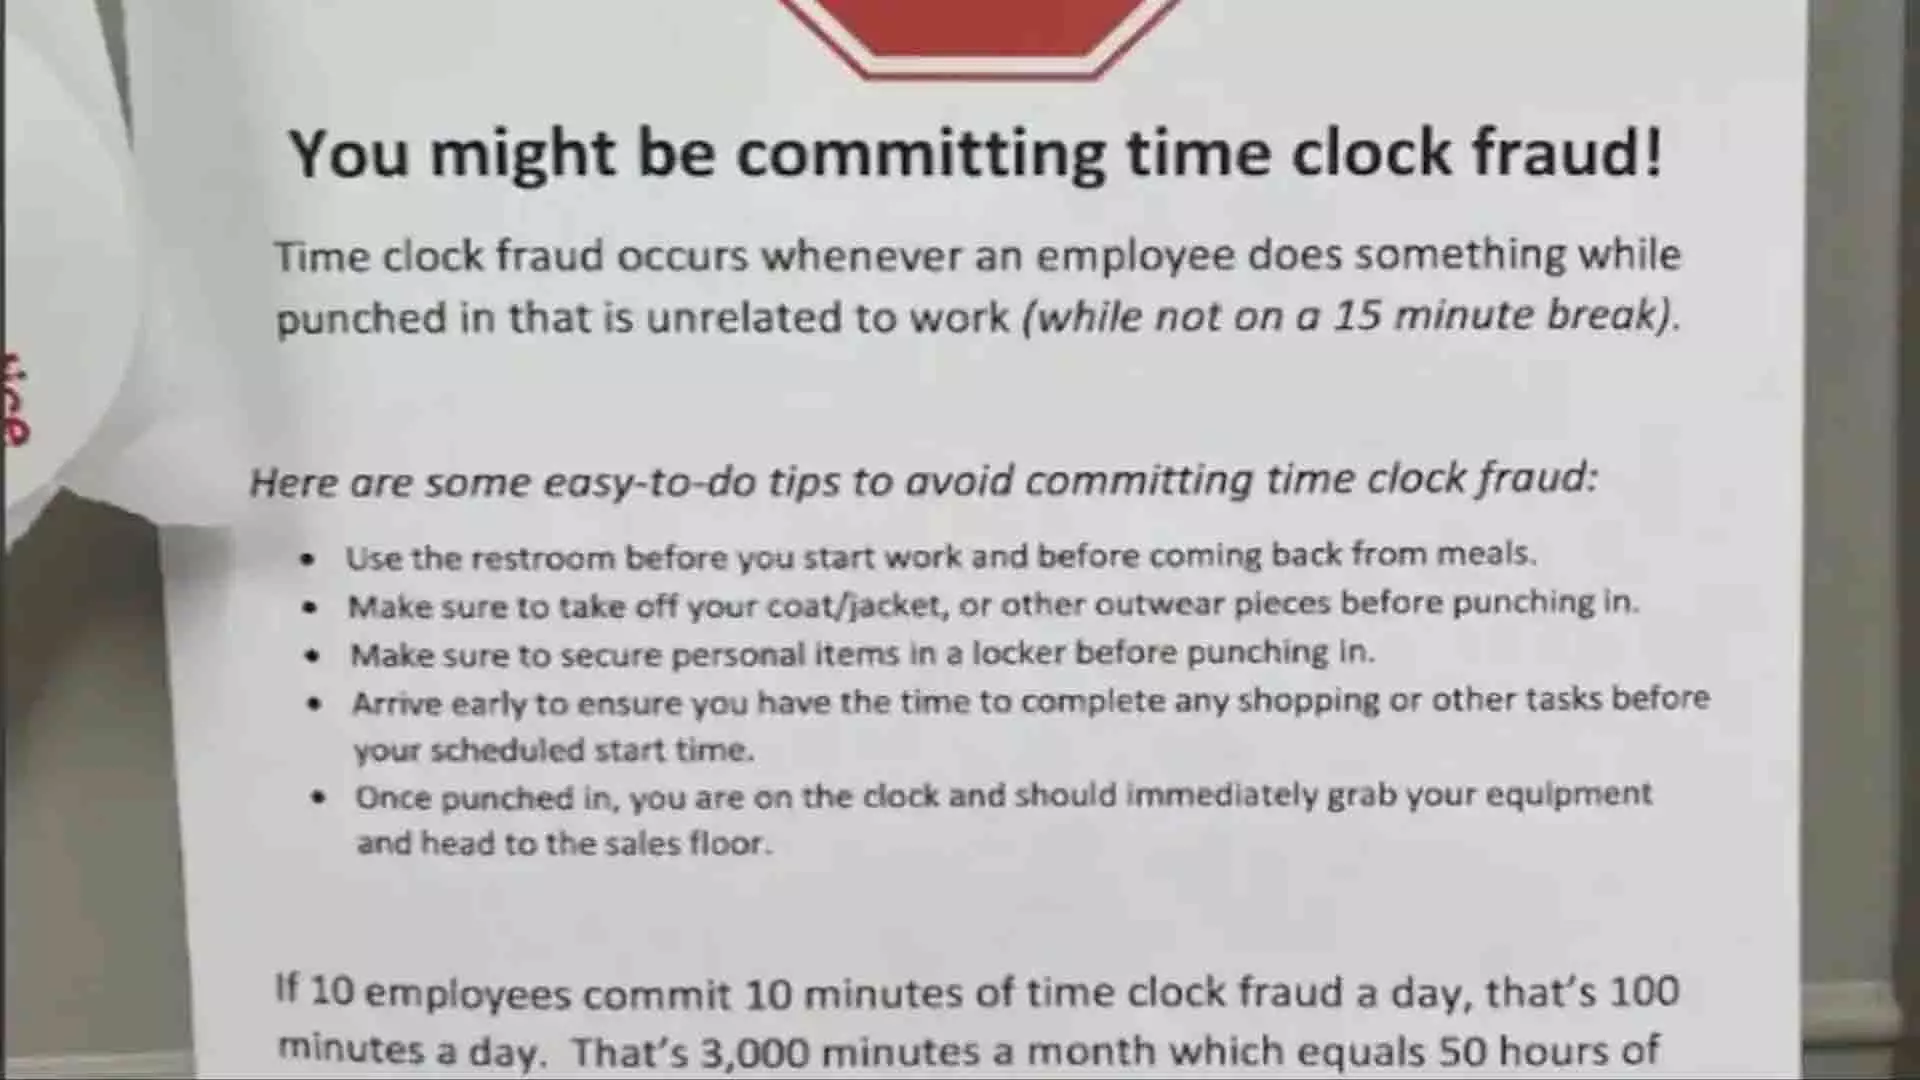 मेमो में कर्मचारियों के लिए टाइम क्लॉक धोखाधड़ी को रोकने के लिए नियम सूचीबद्ध